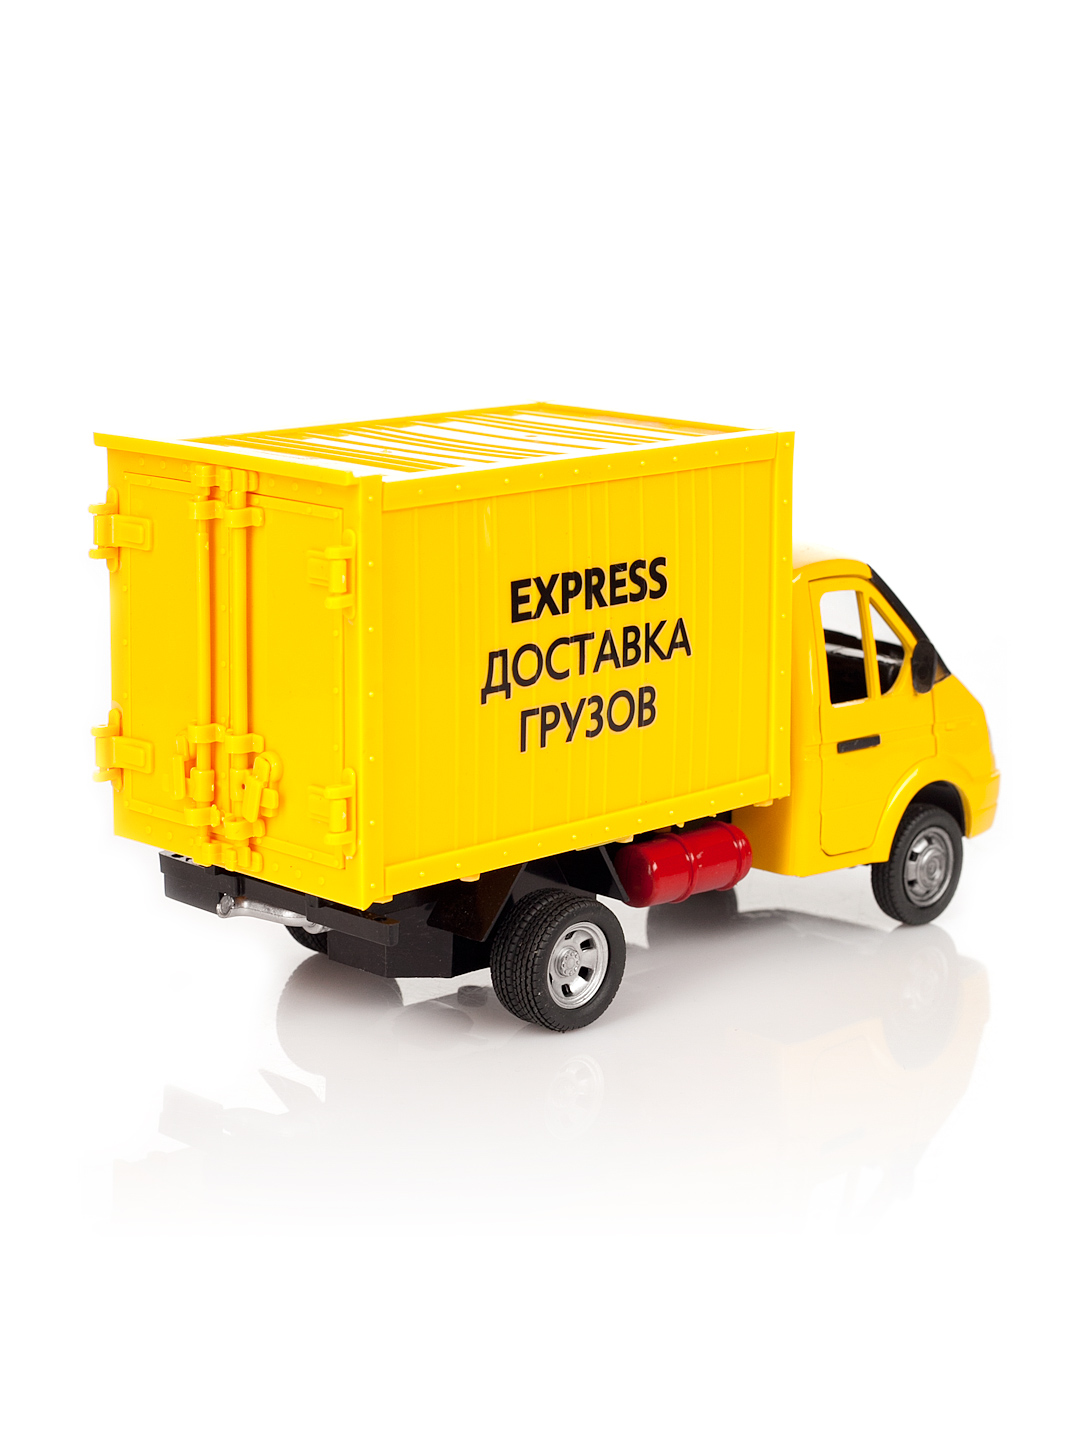 Инерционная машина Газель "Express доставка грузов", свет, звук  